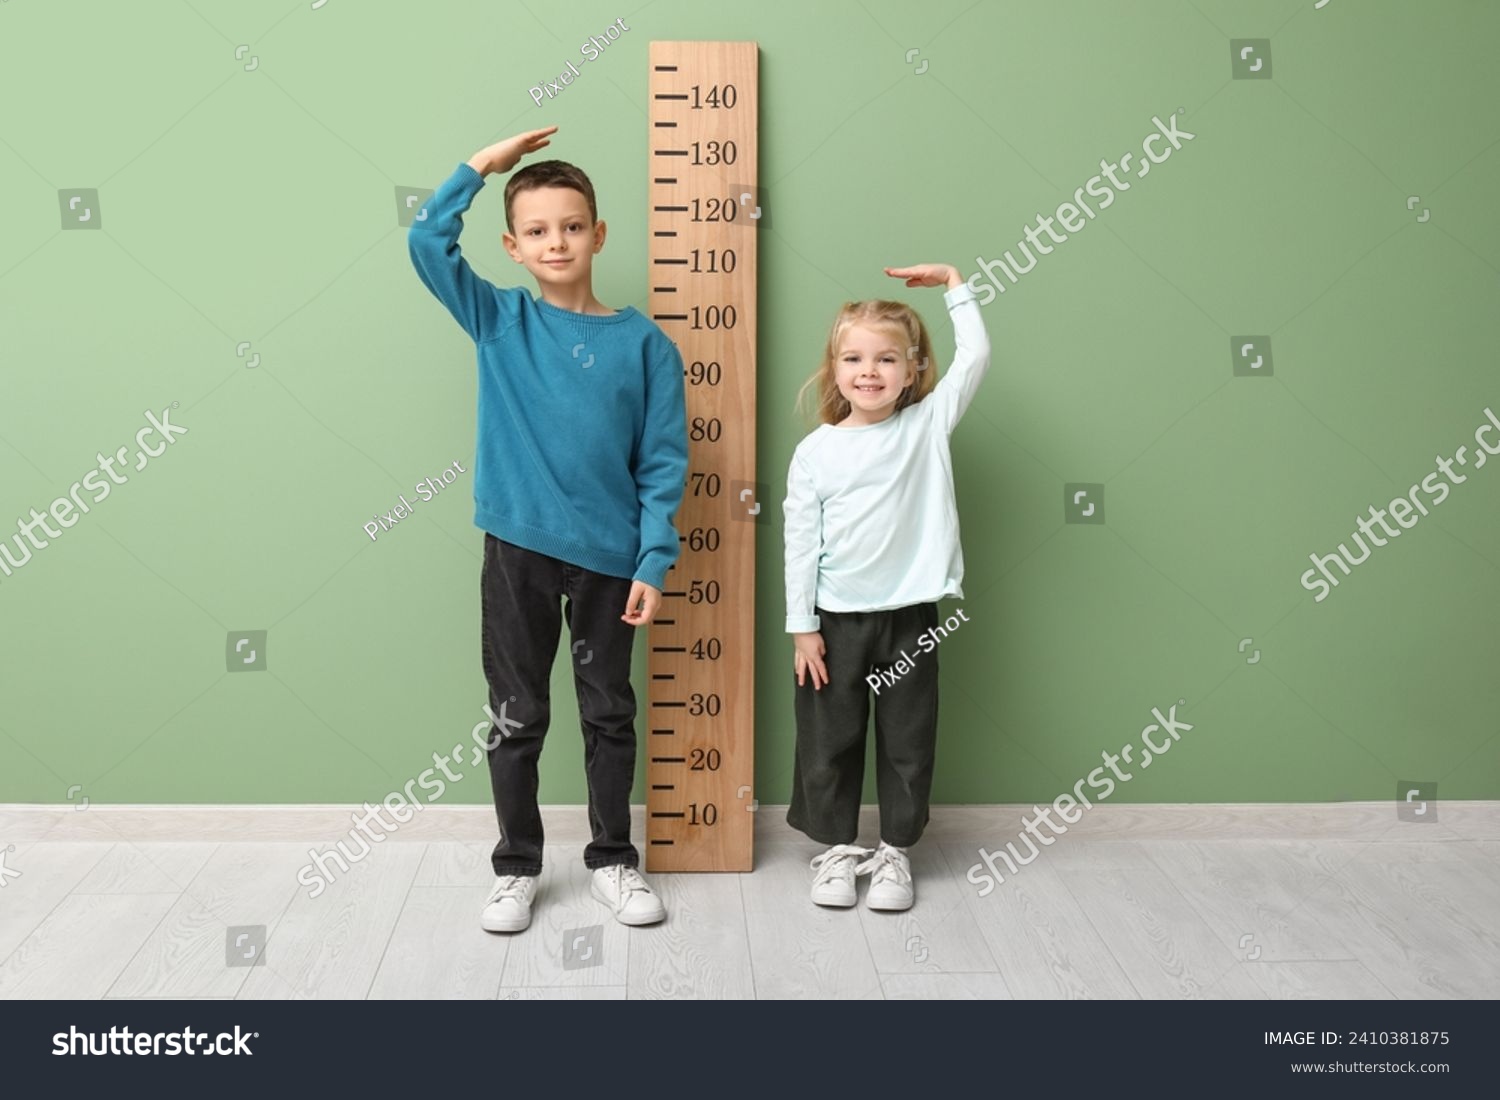 Cute little children measuring height near green wall #2410381875